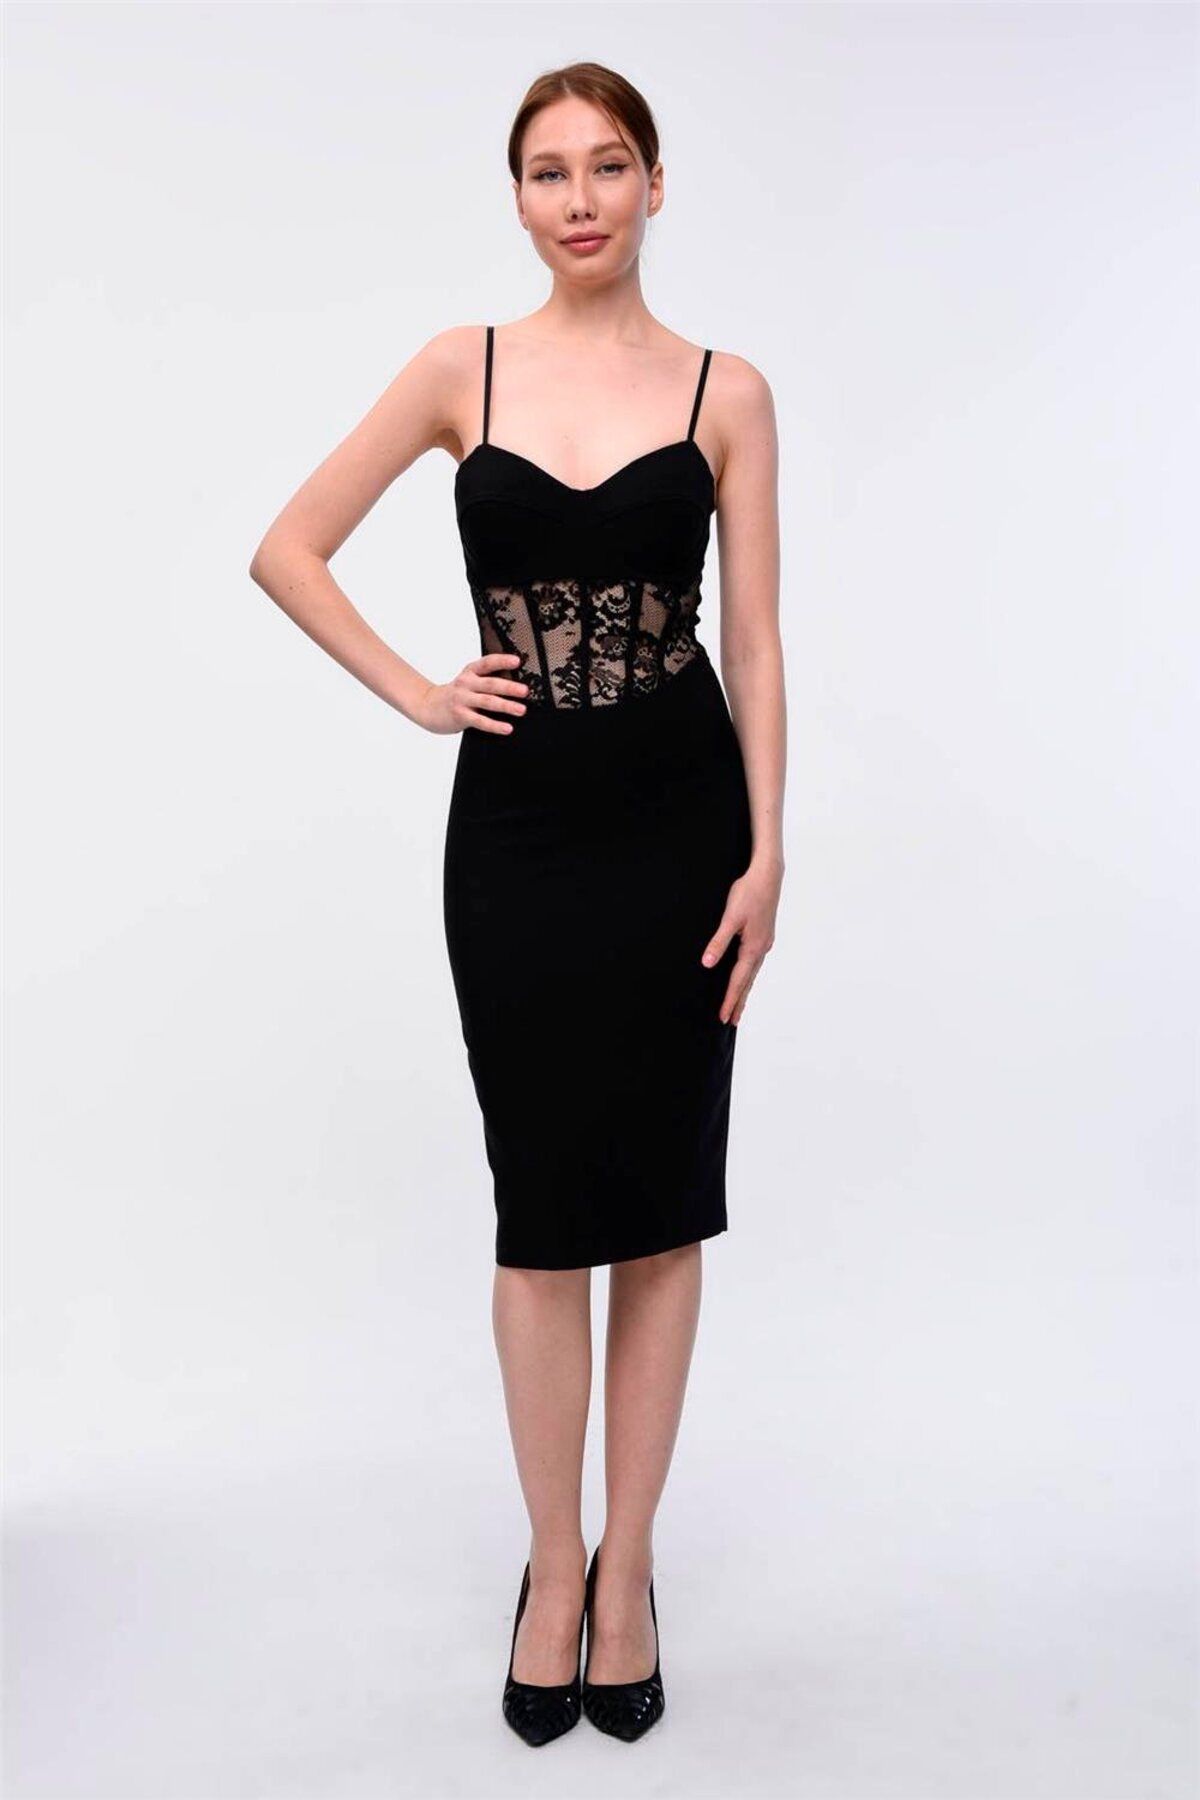 Home Store Elbise Straplez Beli Transparan Dantel Sütyen Askı - Siyah